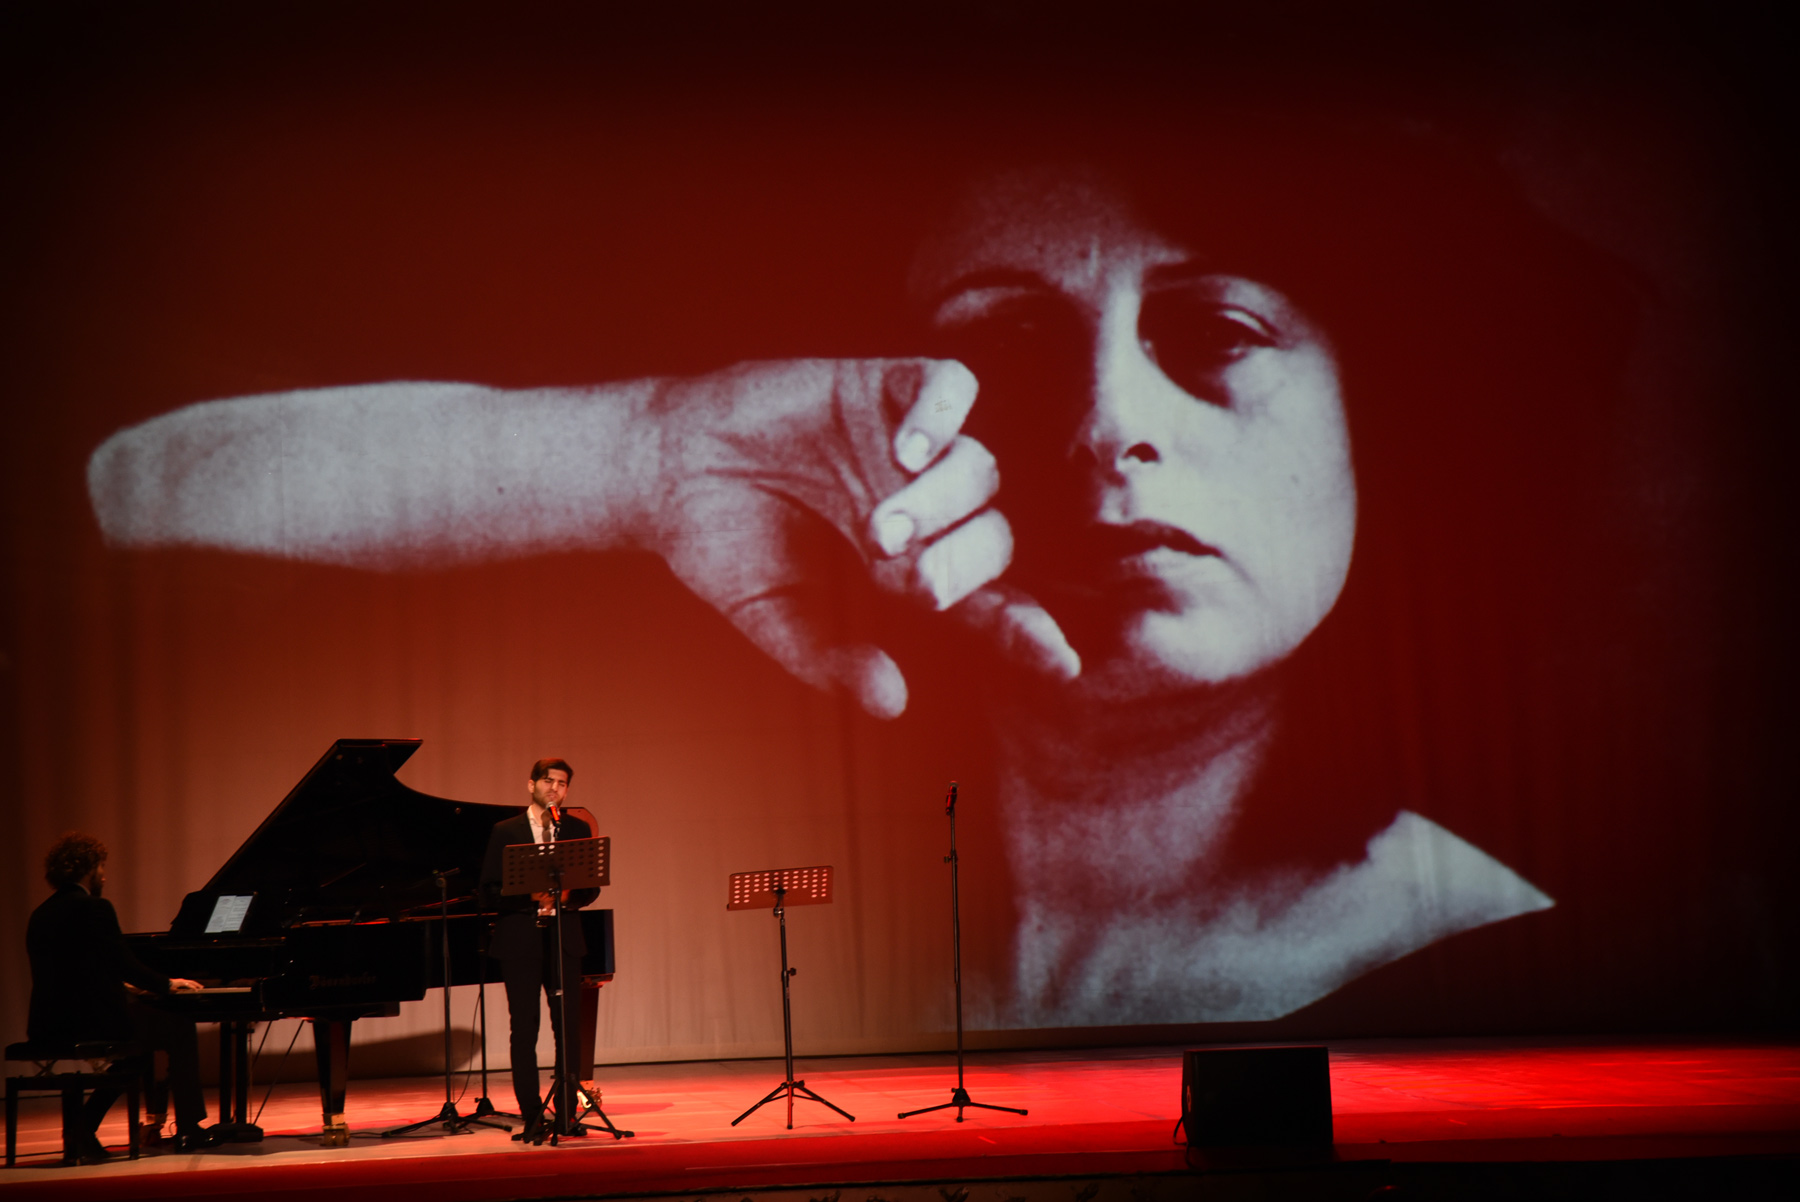 Una notte a Napoli-Teatro Alfonso Rendano-Regia Fabio Gallo